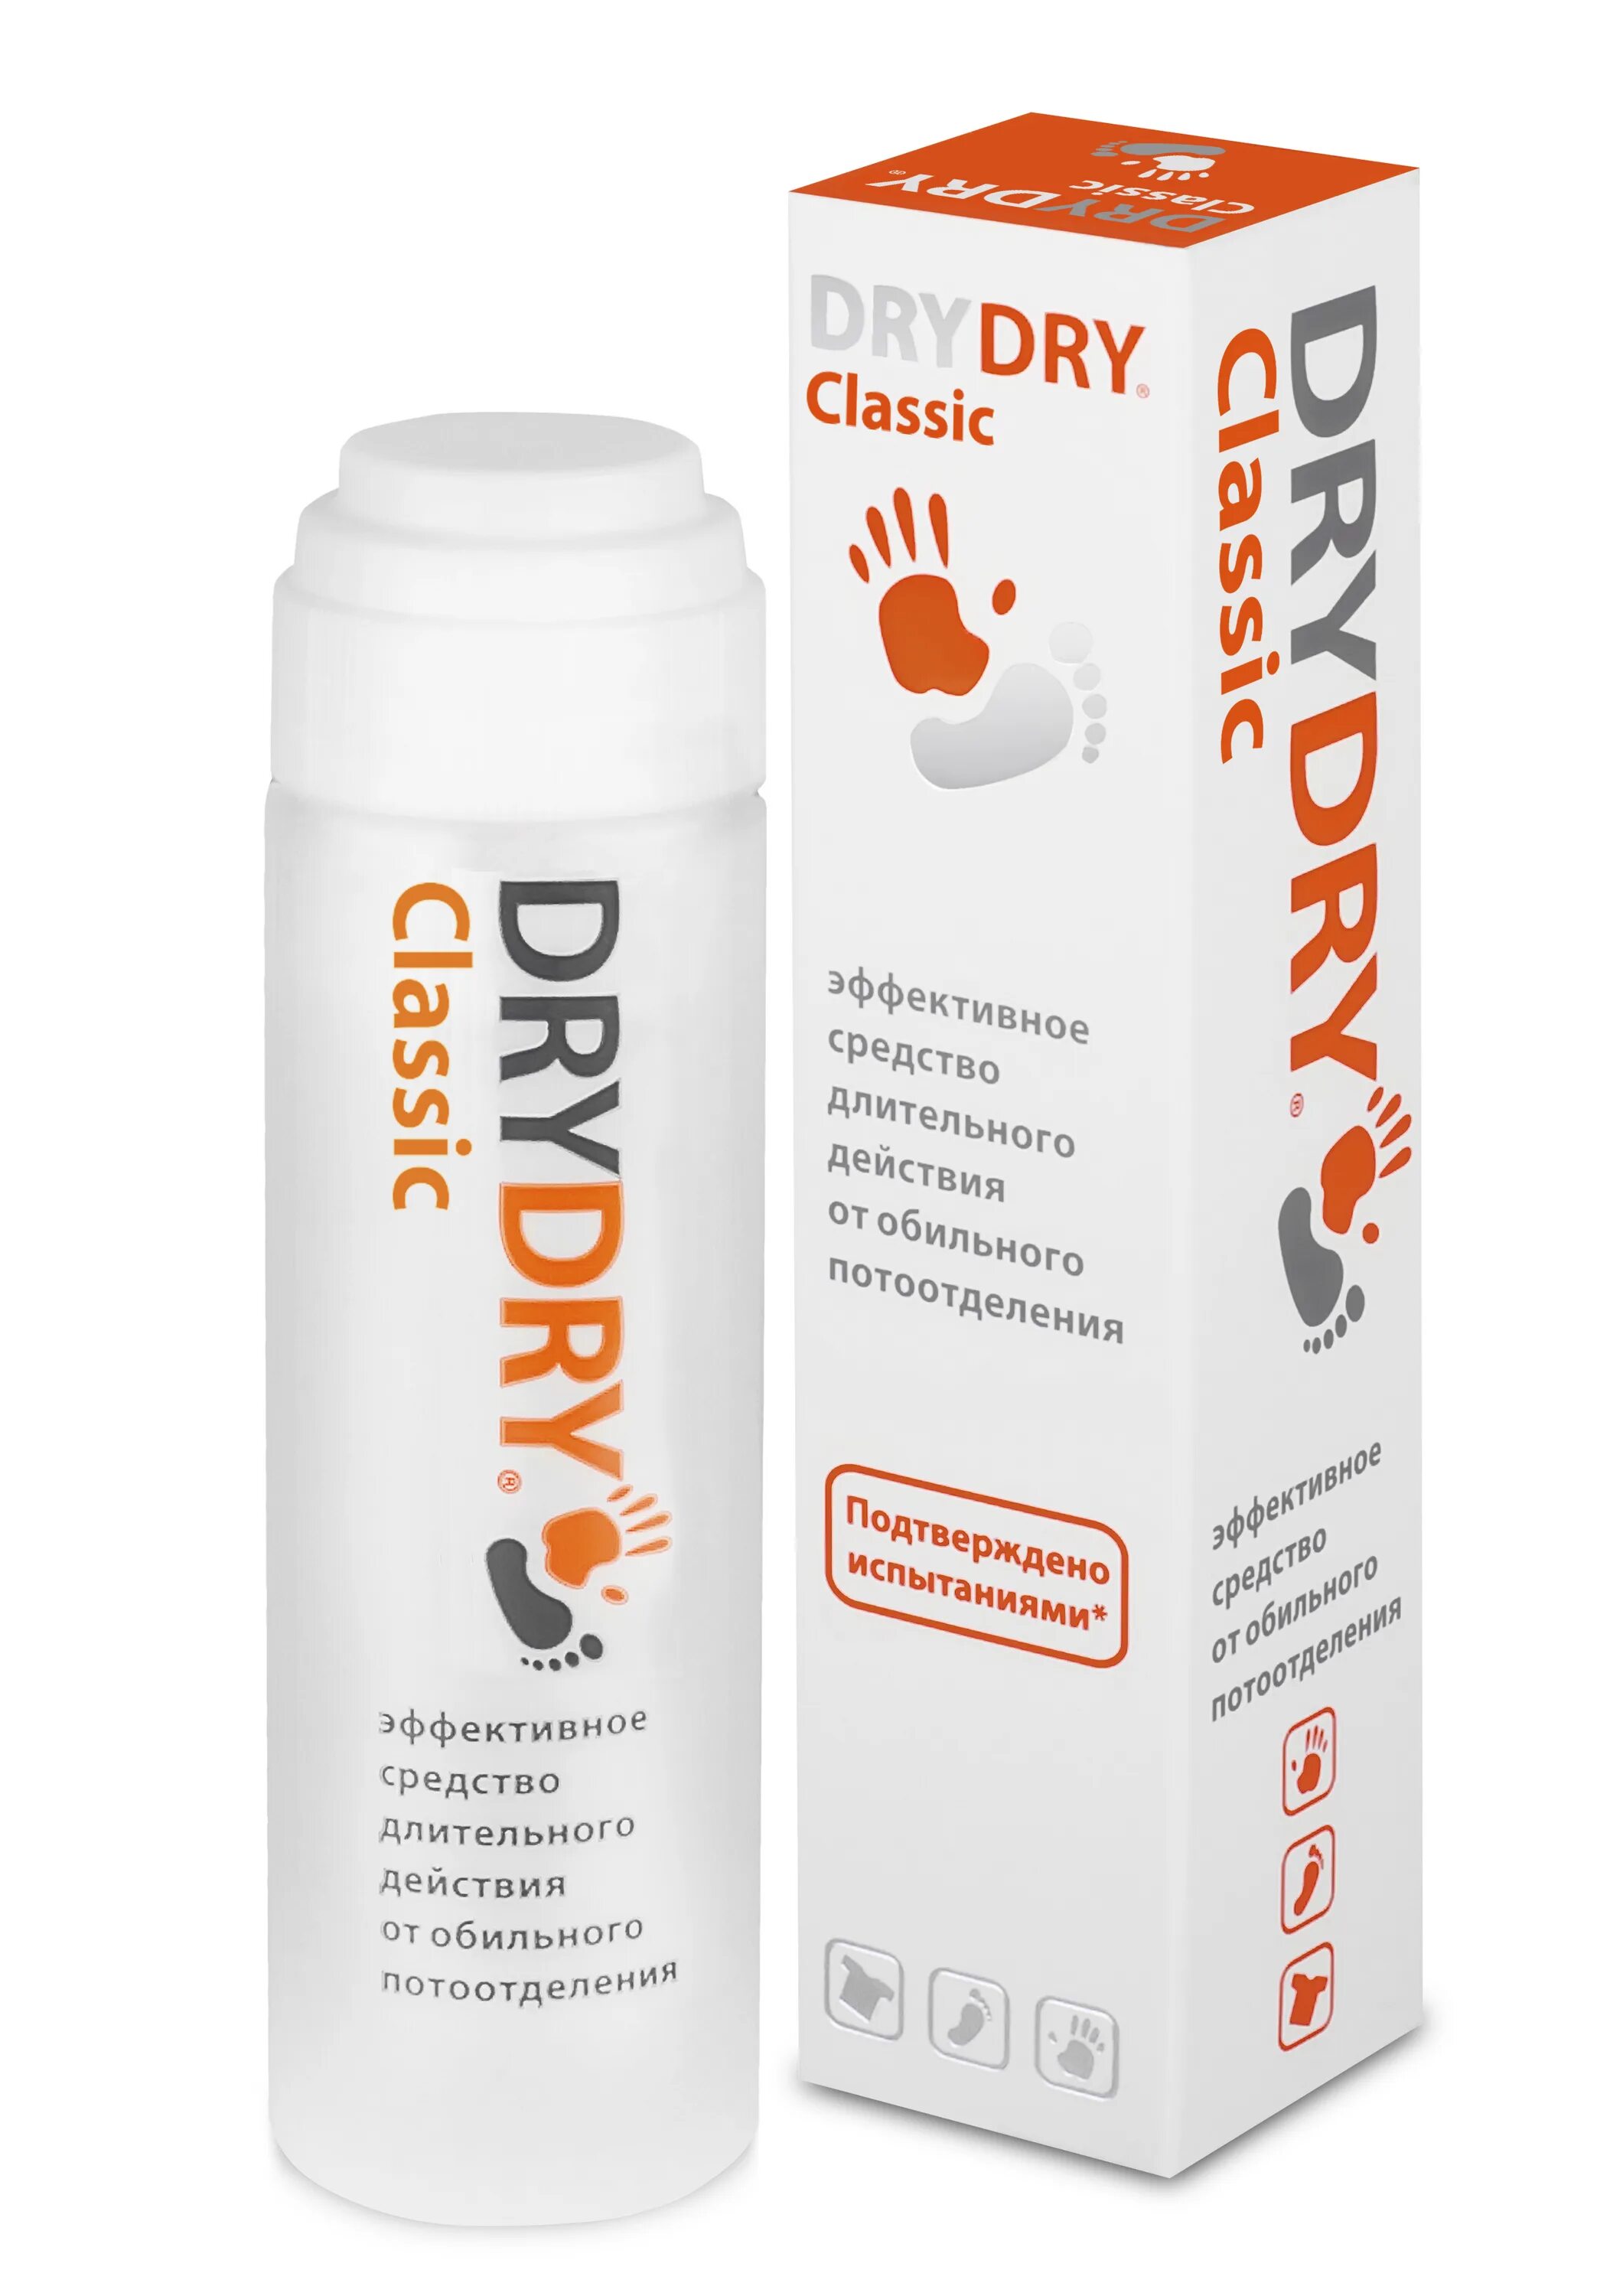 Dry dry дезодорант отзывы. Dry Dry дезодорант. Дезодорант "Dry Dry" Classic 35мл. DRYDRY антиперспирант, дабоматик, Classic. Драй драй средство от обильного потовыделения 35 мл.